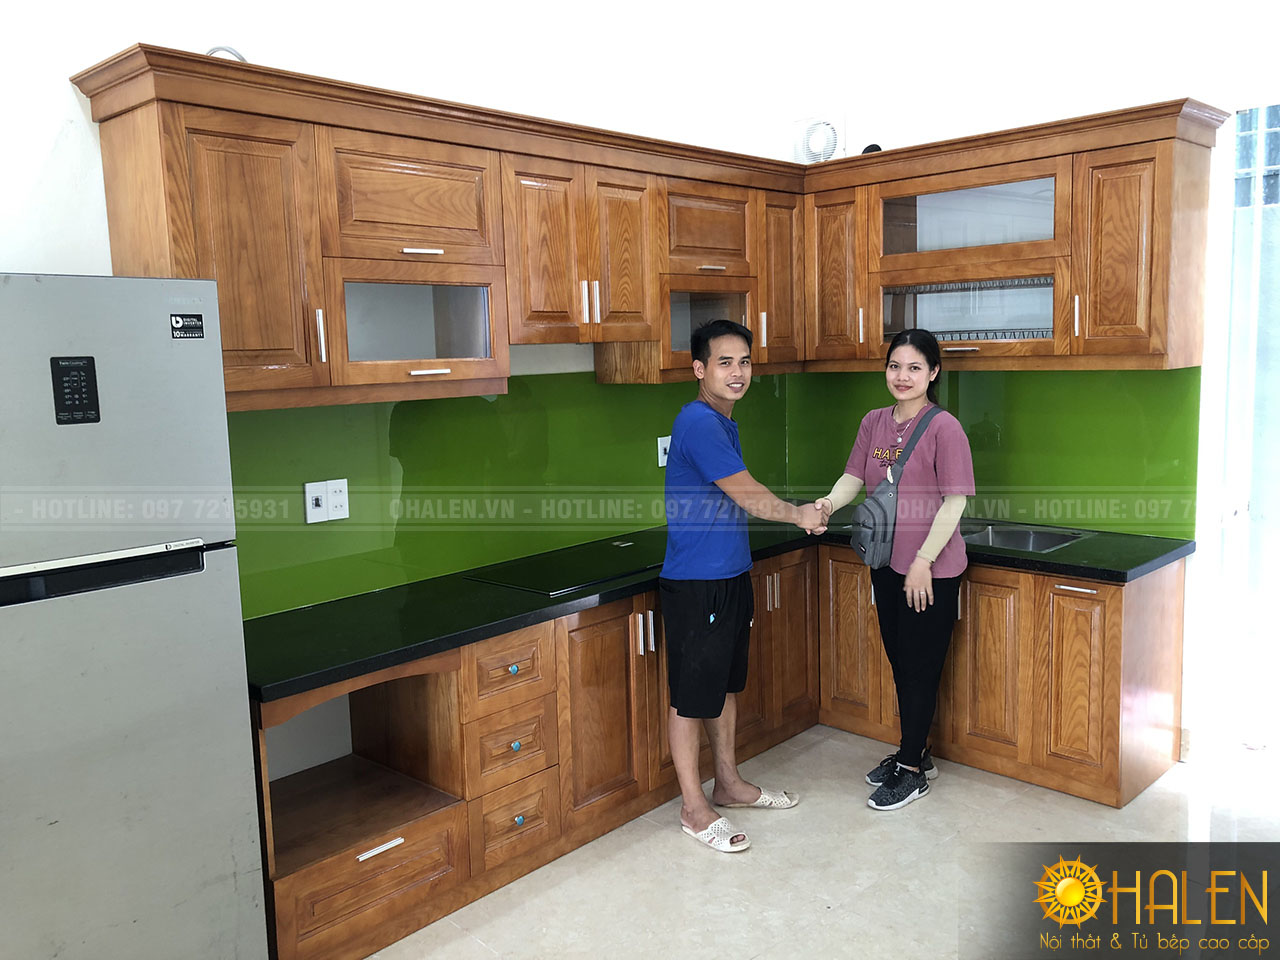 Hình ảnh khách hàng hài lòng với sản phẩm tủ bếp gỗ cao cấp của OHALEN